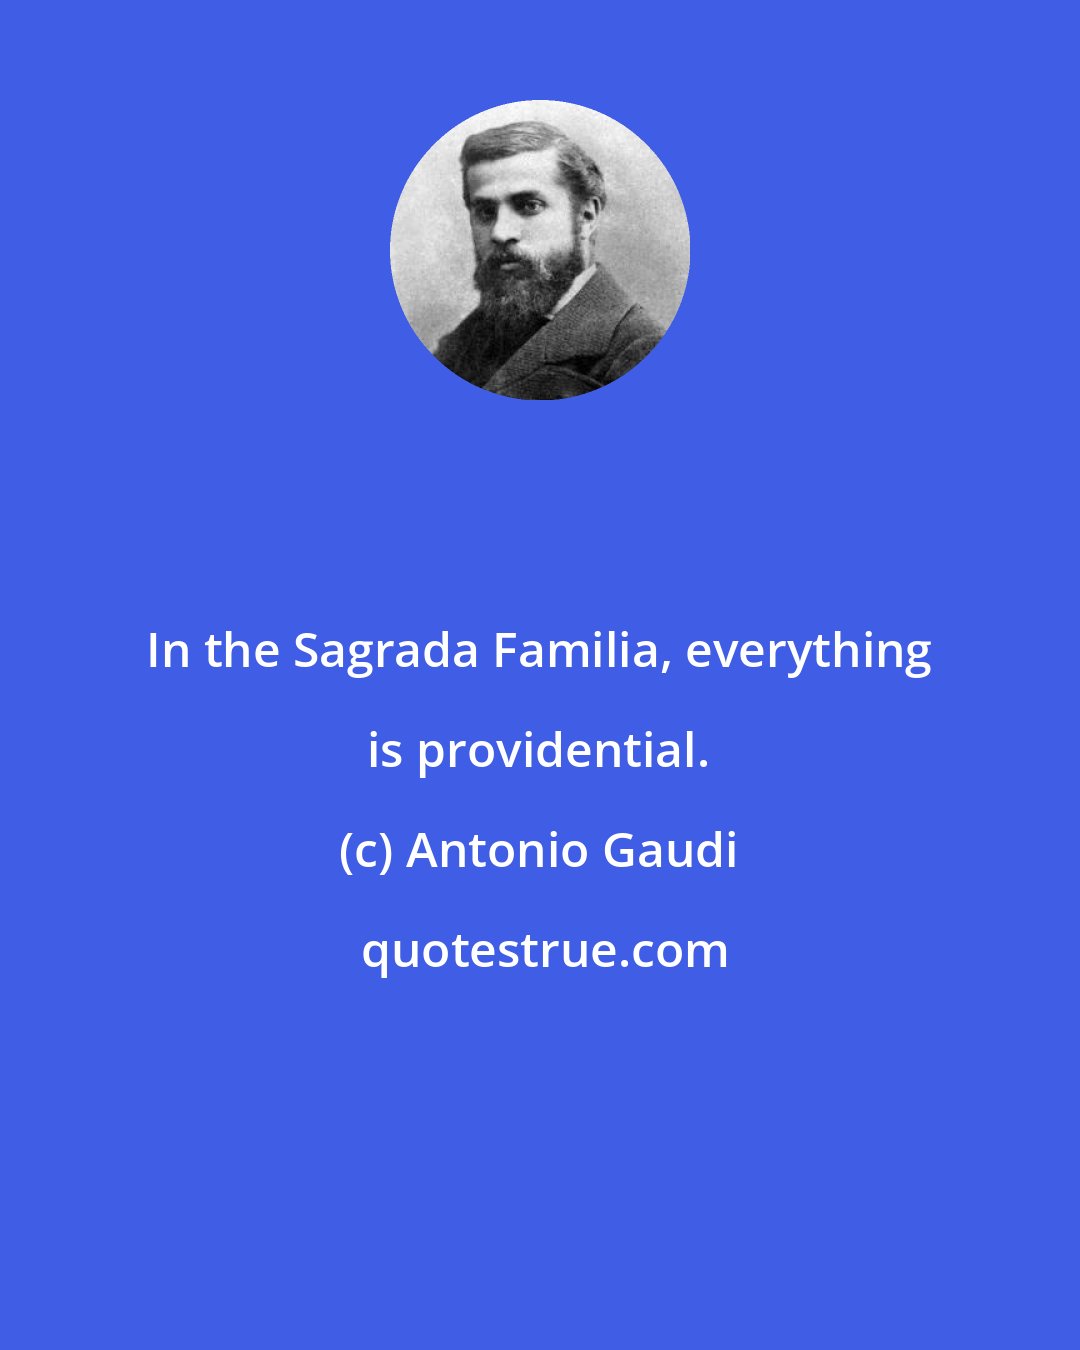 Antonio Gaudi: In the Sagrada Familia, everything is providential.